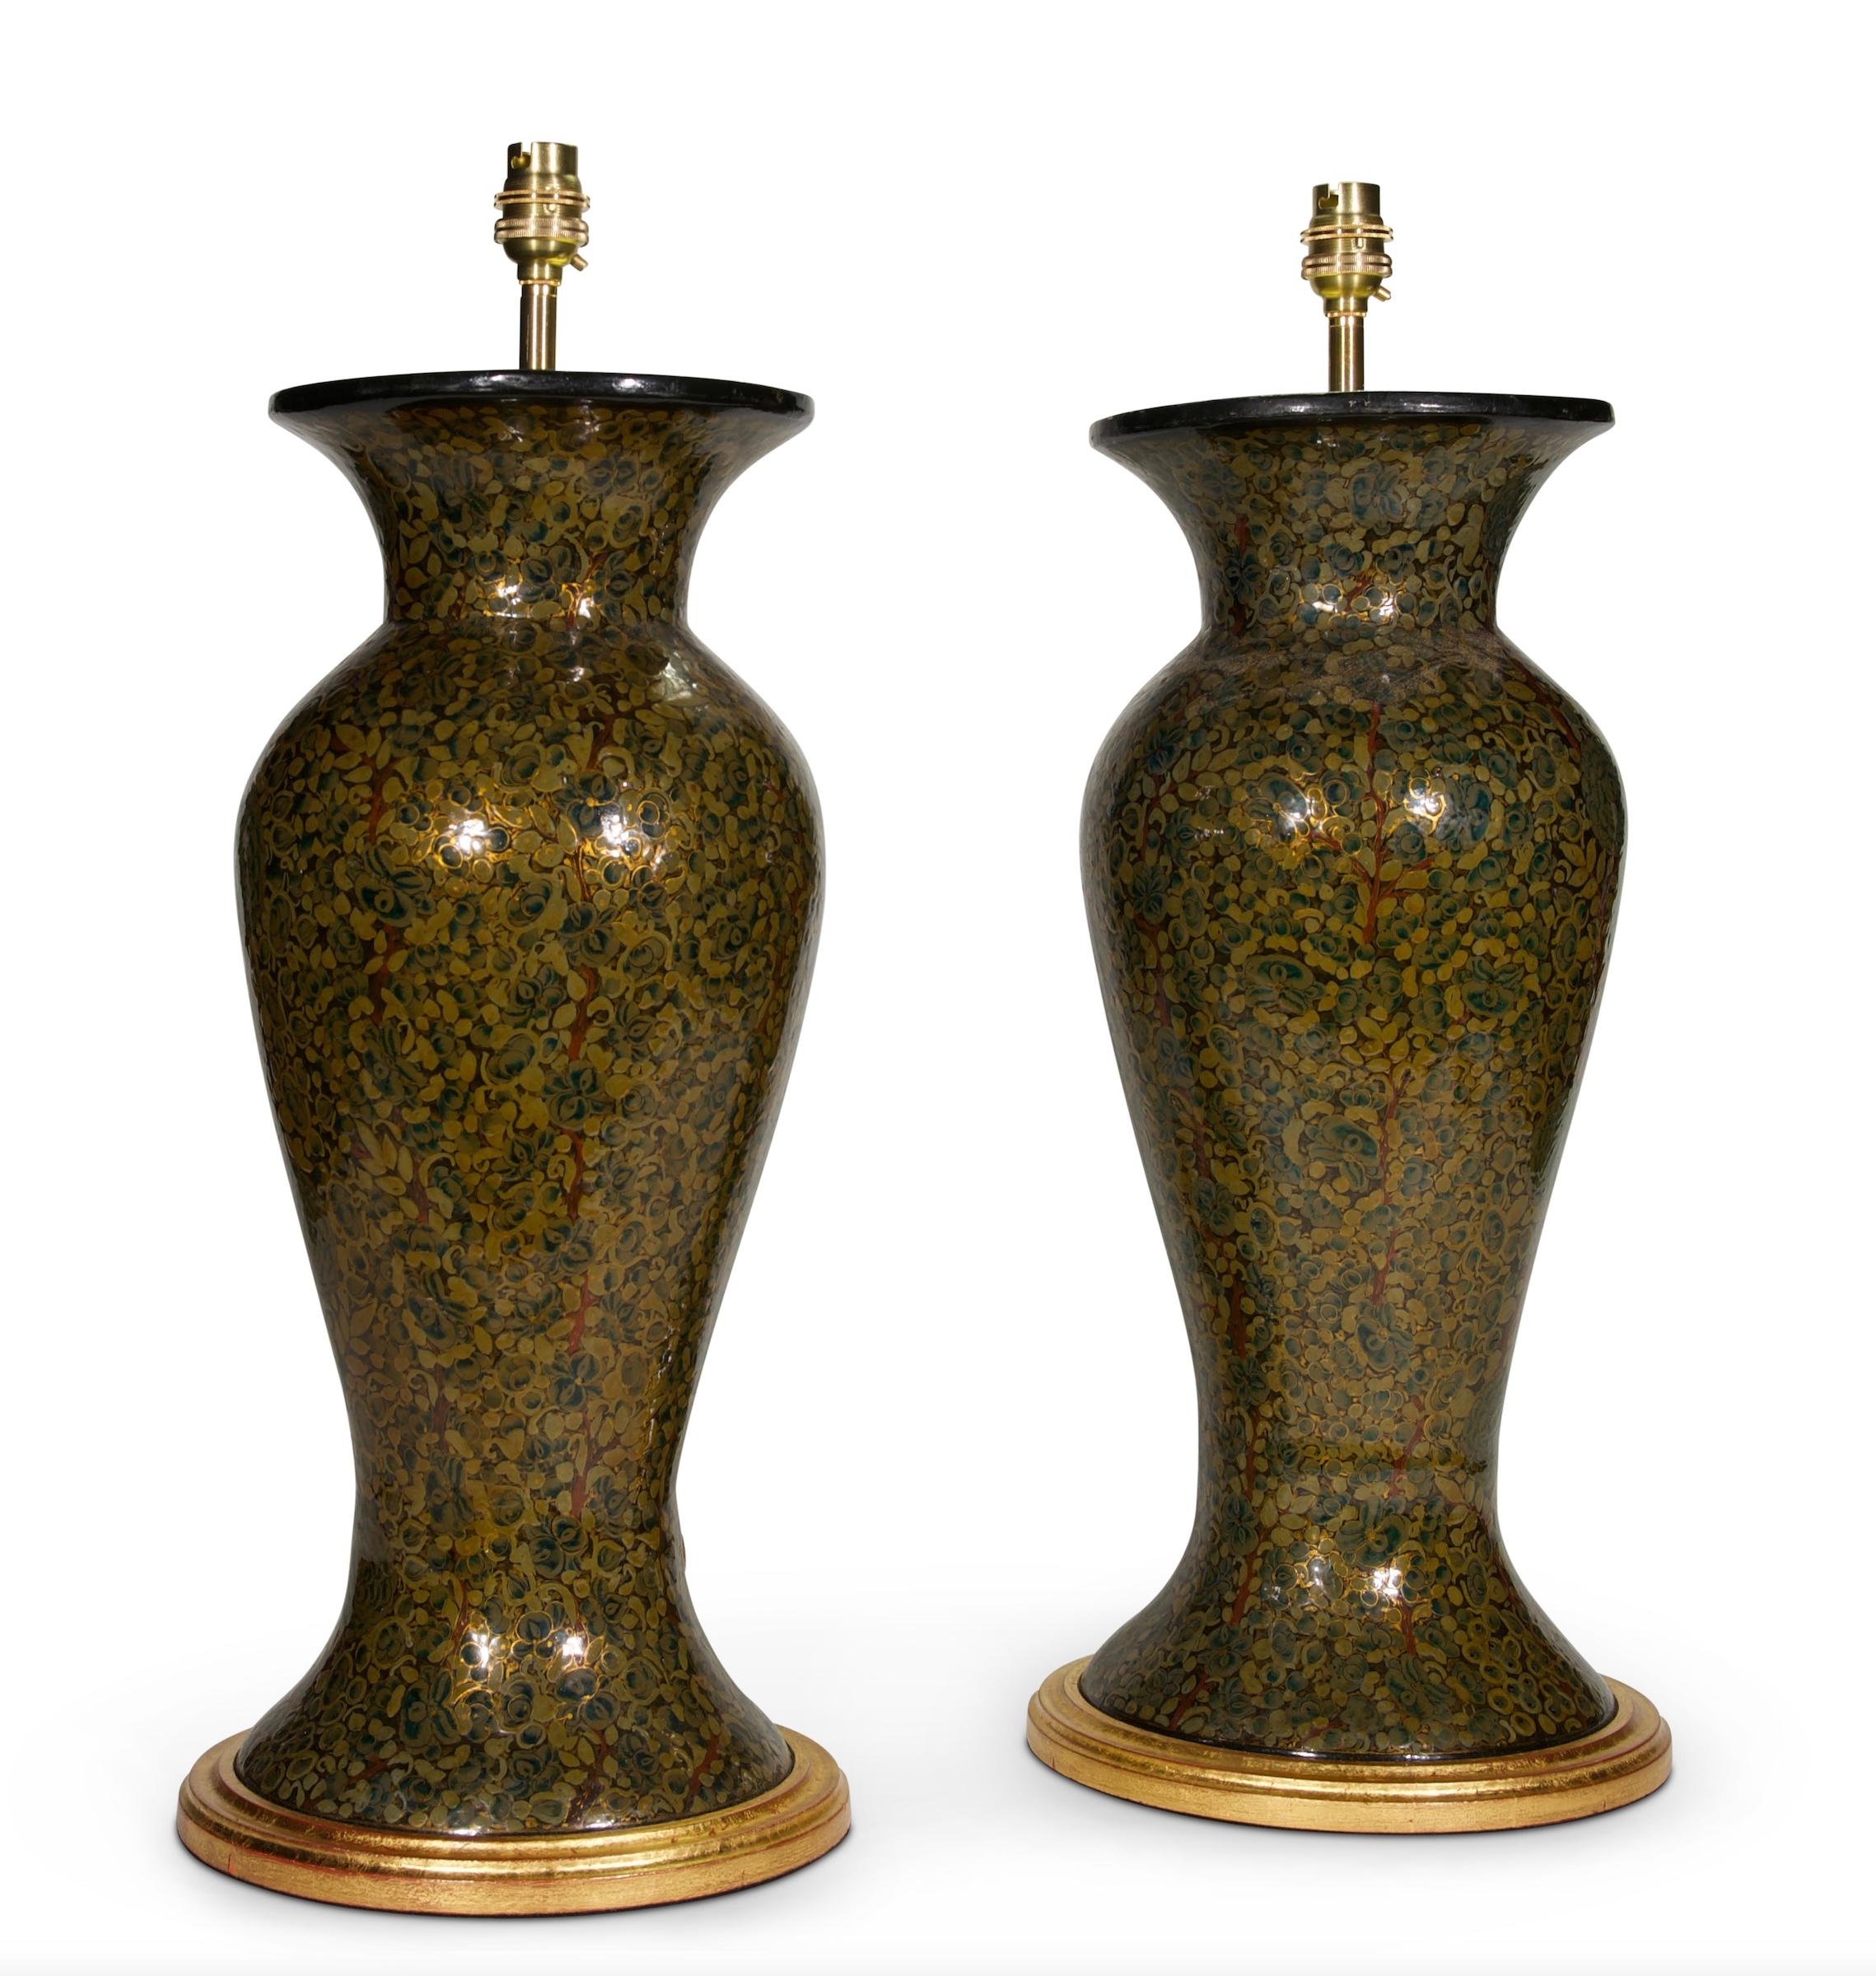 Ein feines Paar Balustervasen aus Kaschmirlack des 20. Jahrhunderts, durchgehend mit Blattmotiven in Grüntönen mit vergoldeten Highlights verziert, jetzt als Lampen mit handvergoldeten gedrehten Sockeln montiert.

Maße: Höhe der Leuchte: 18 1/4